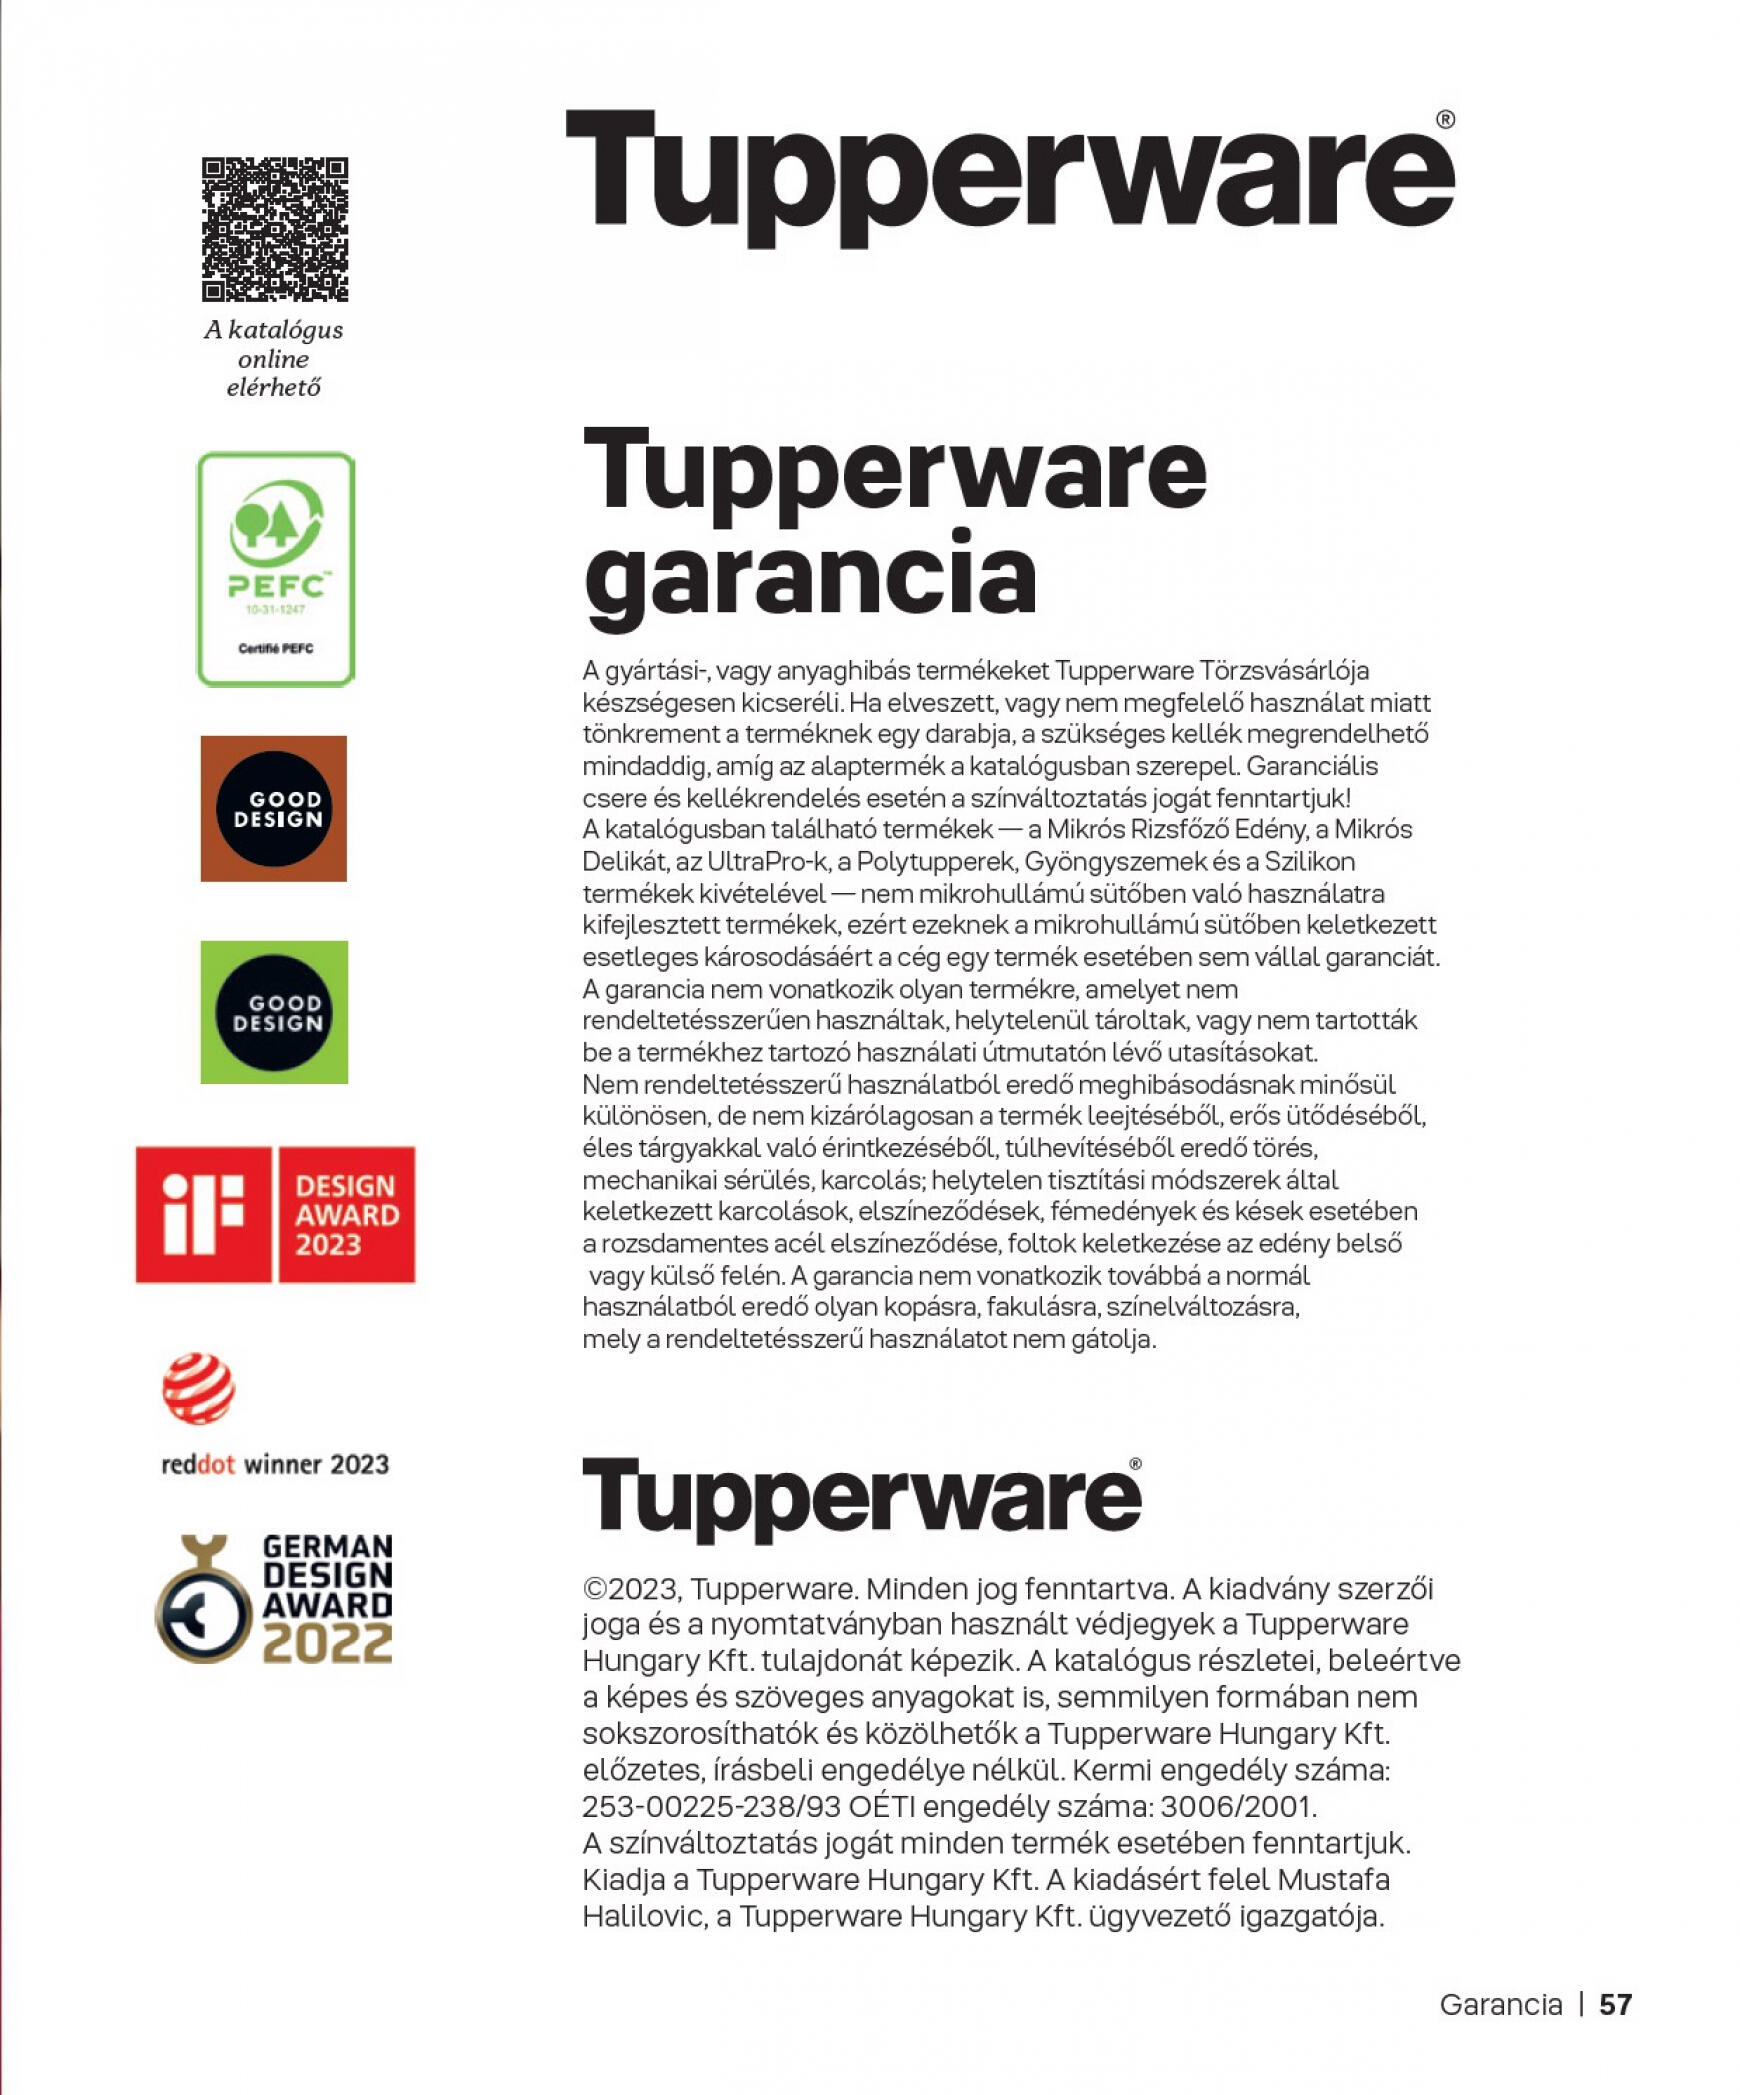 tupperware - Tupperware - ŐSZI & TÉLI KATALÓGUS 2023/24 dátumtól érvényes 2023.11.27. - page: 57